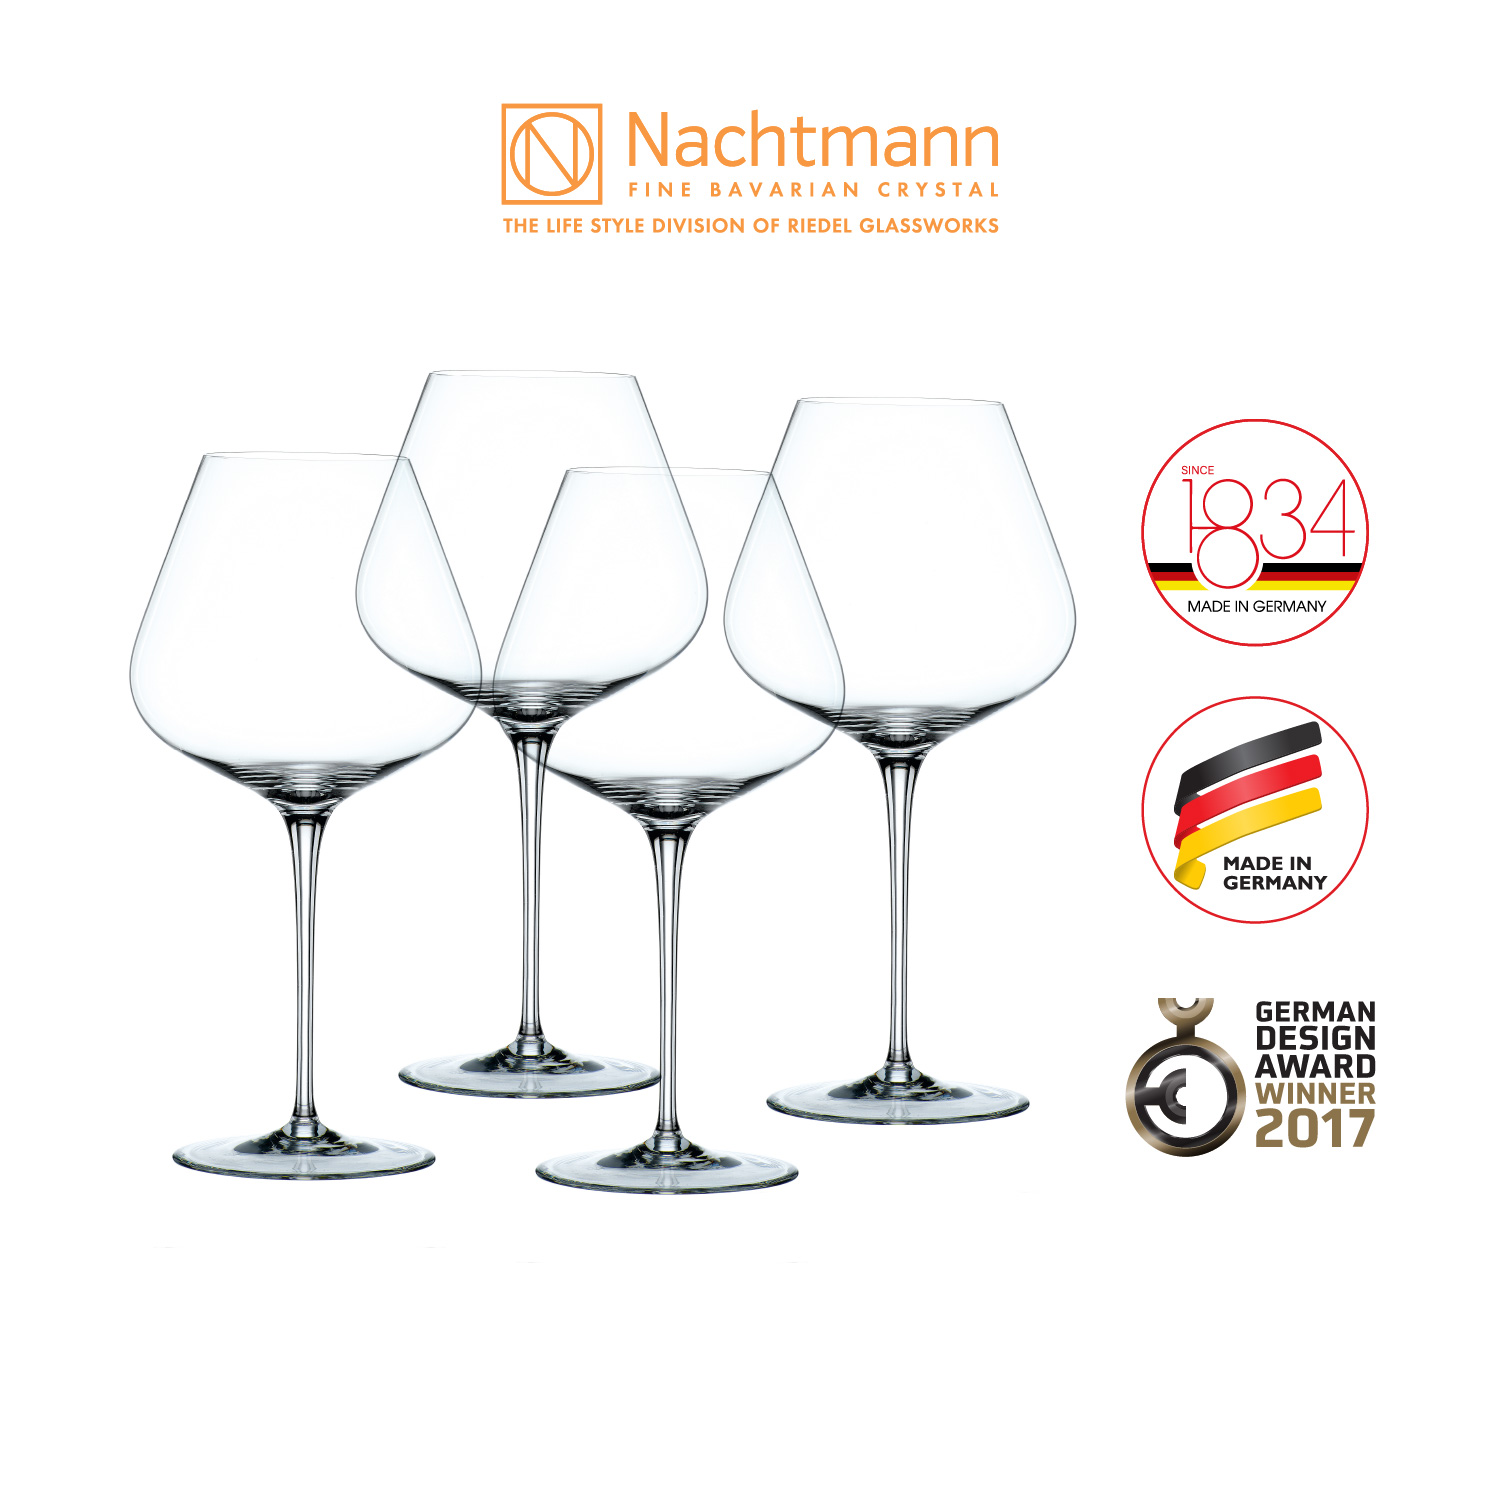 Bộ 4 ly rượu vang đỏ Nachtmann ViNova Magnum-Hàng chính hãng 100%